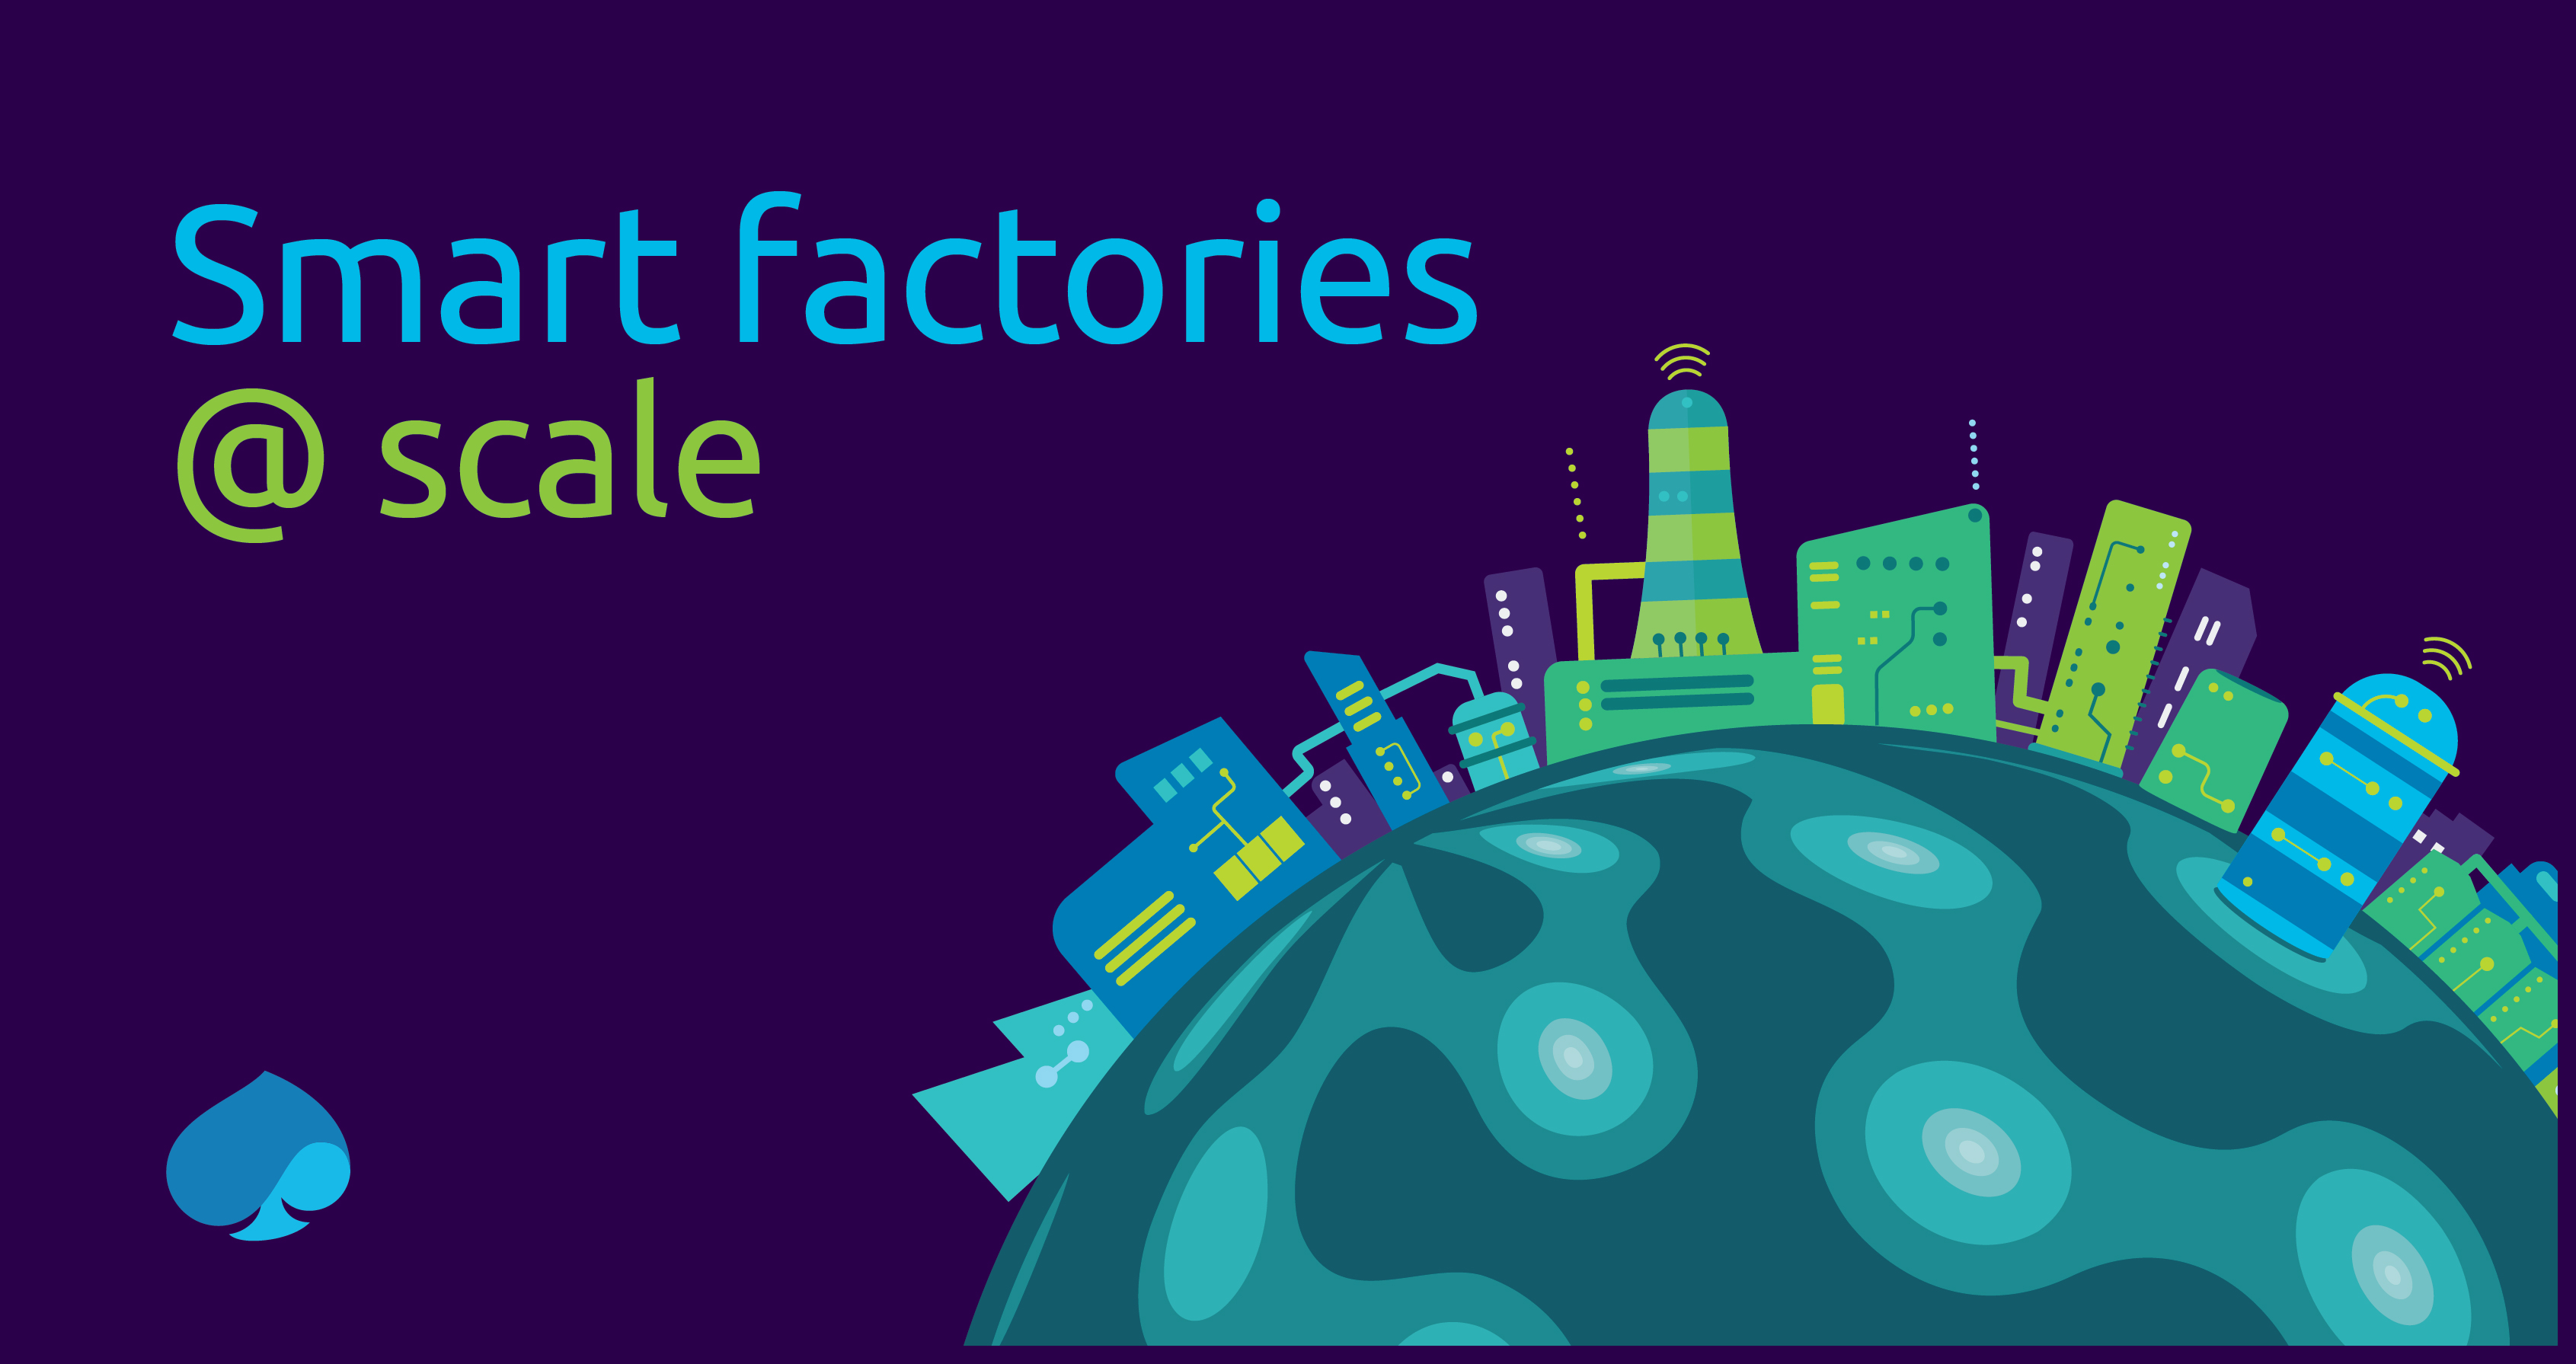 キャップジェミニの Smart Factories Scale レポート ー スマートファクトリーは 23年までに世界経済を1 5兆ドル押し上げる キャップジェミ二のプレスリリース